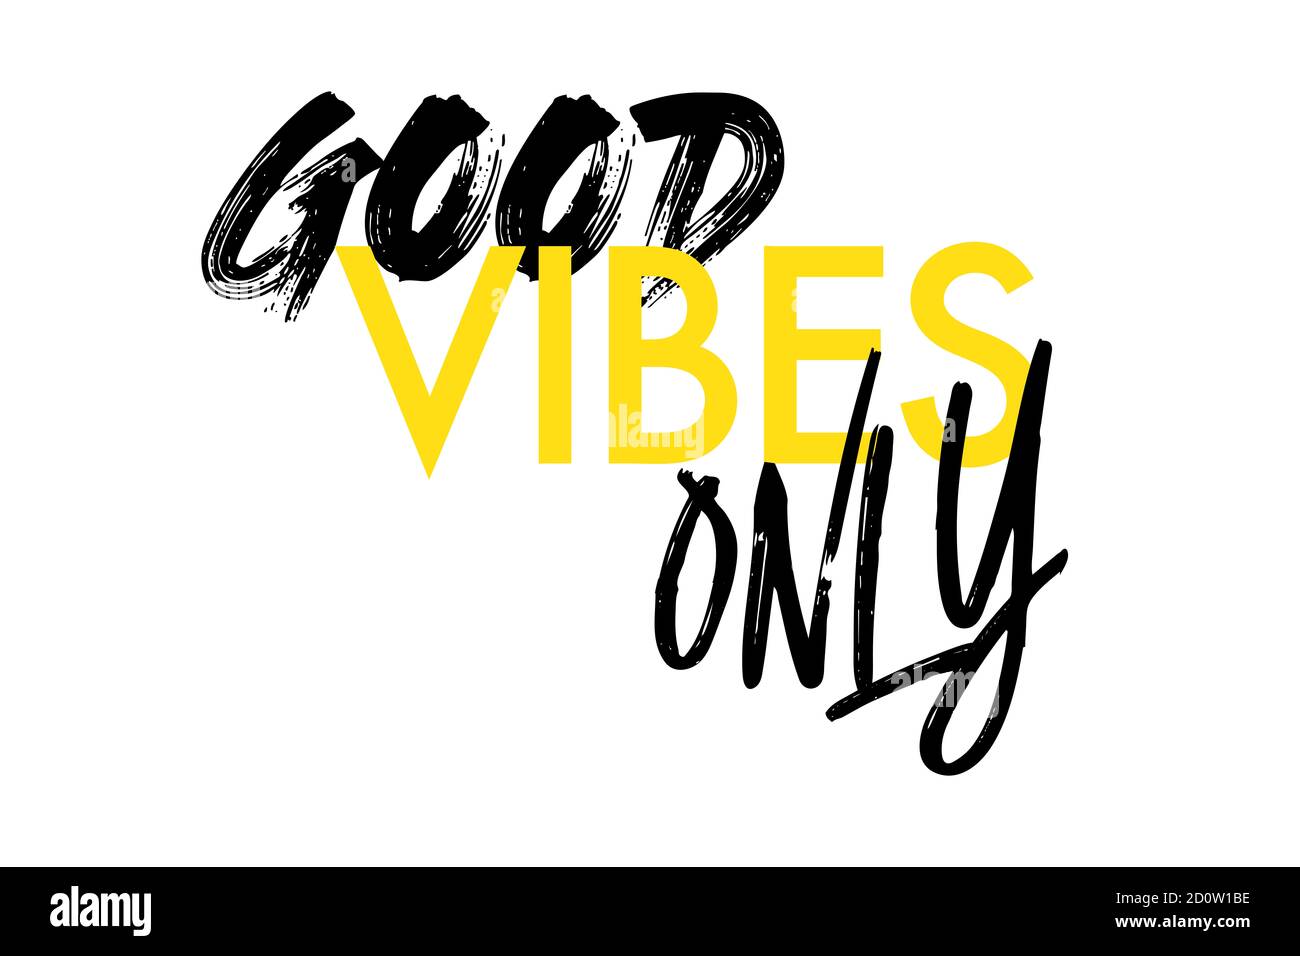 Modernes, kreatives Grafikdesign eines Sprichwort "Good Vibes Only". Urbane, kühne, lebendige und verspielte Typografie in gelben und schwarzen Farben. Stockfoto